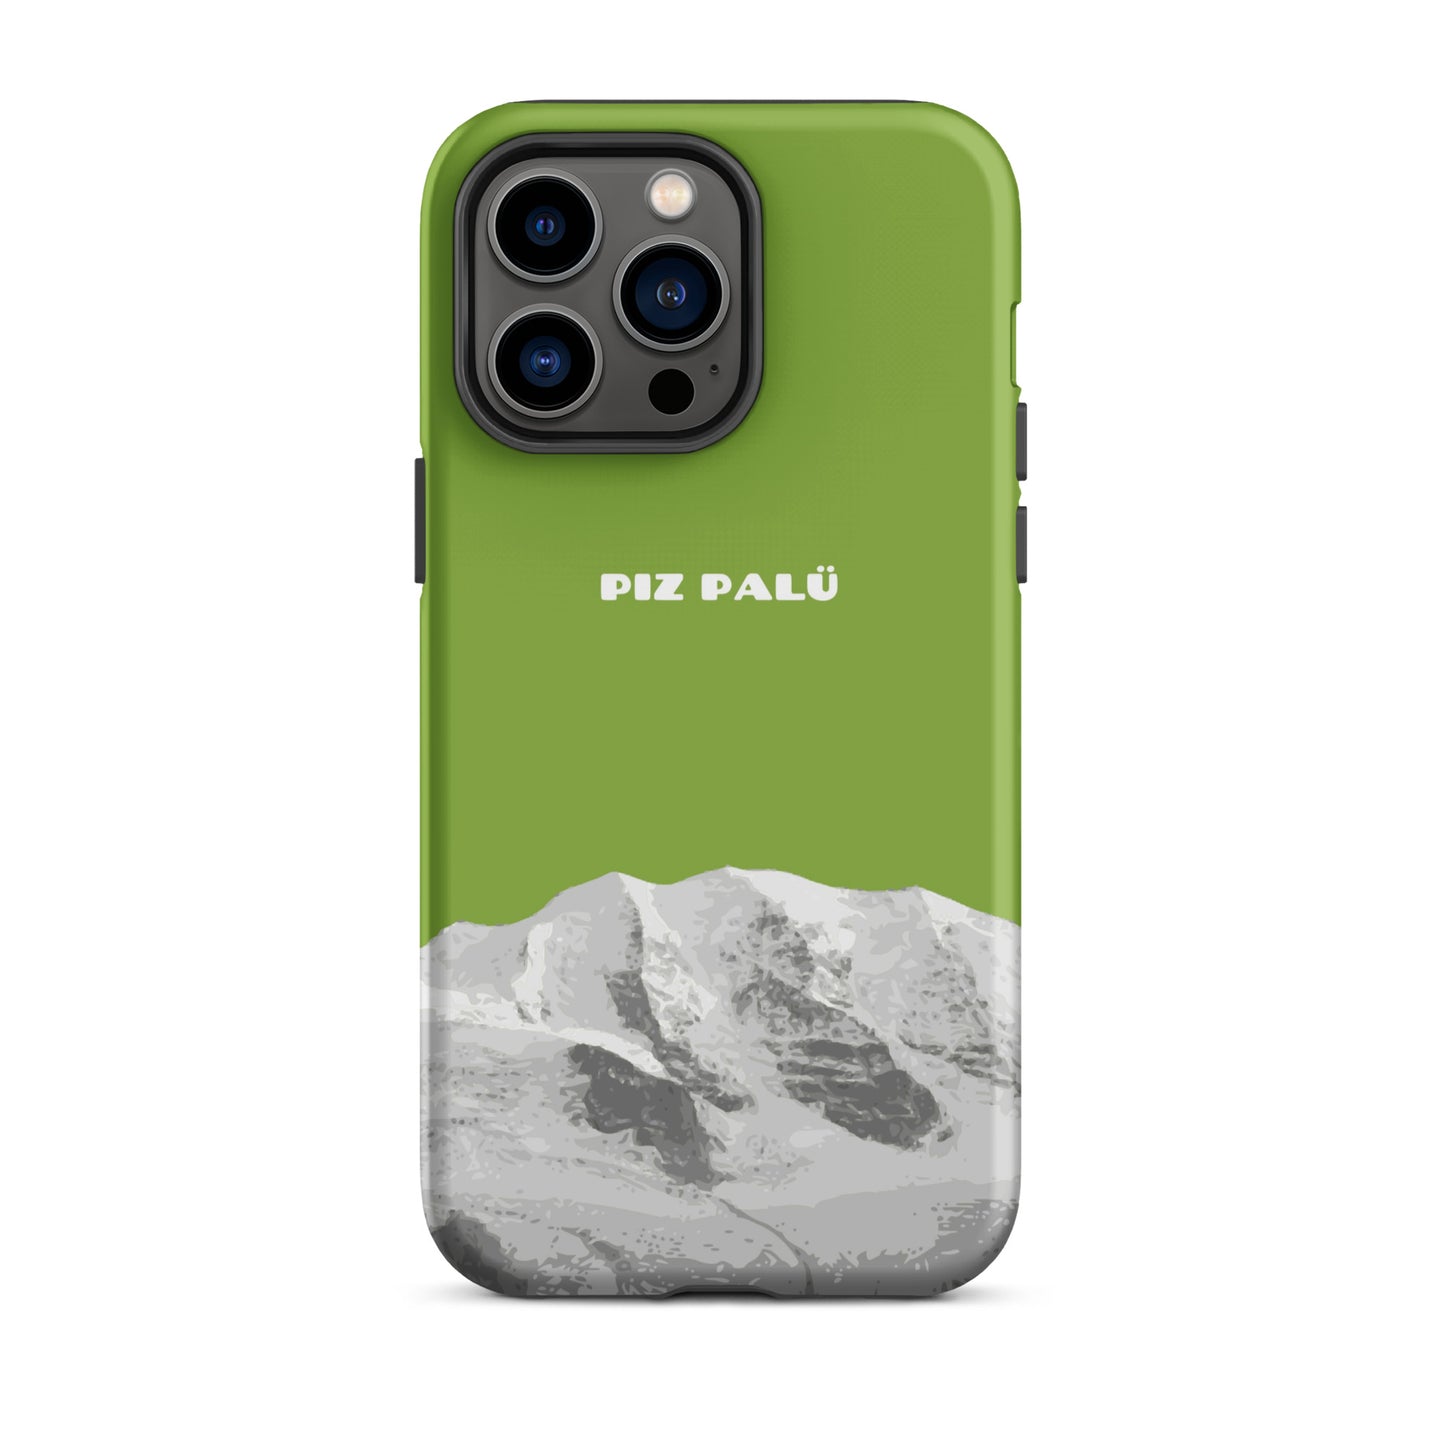 Hülle für das iPhone 14 Pro Max von Apple in der Farbe Gelbgrün, dass den Piz Palü in Graubünden zeigt. 